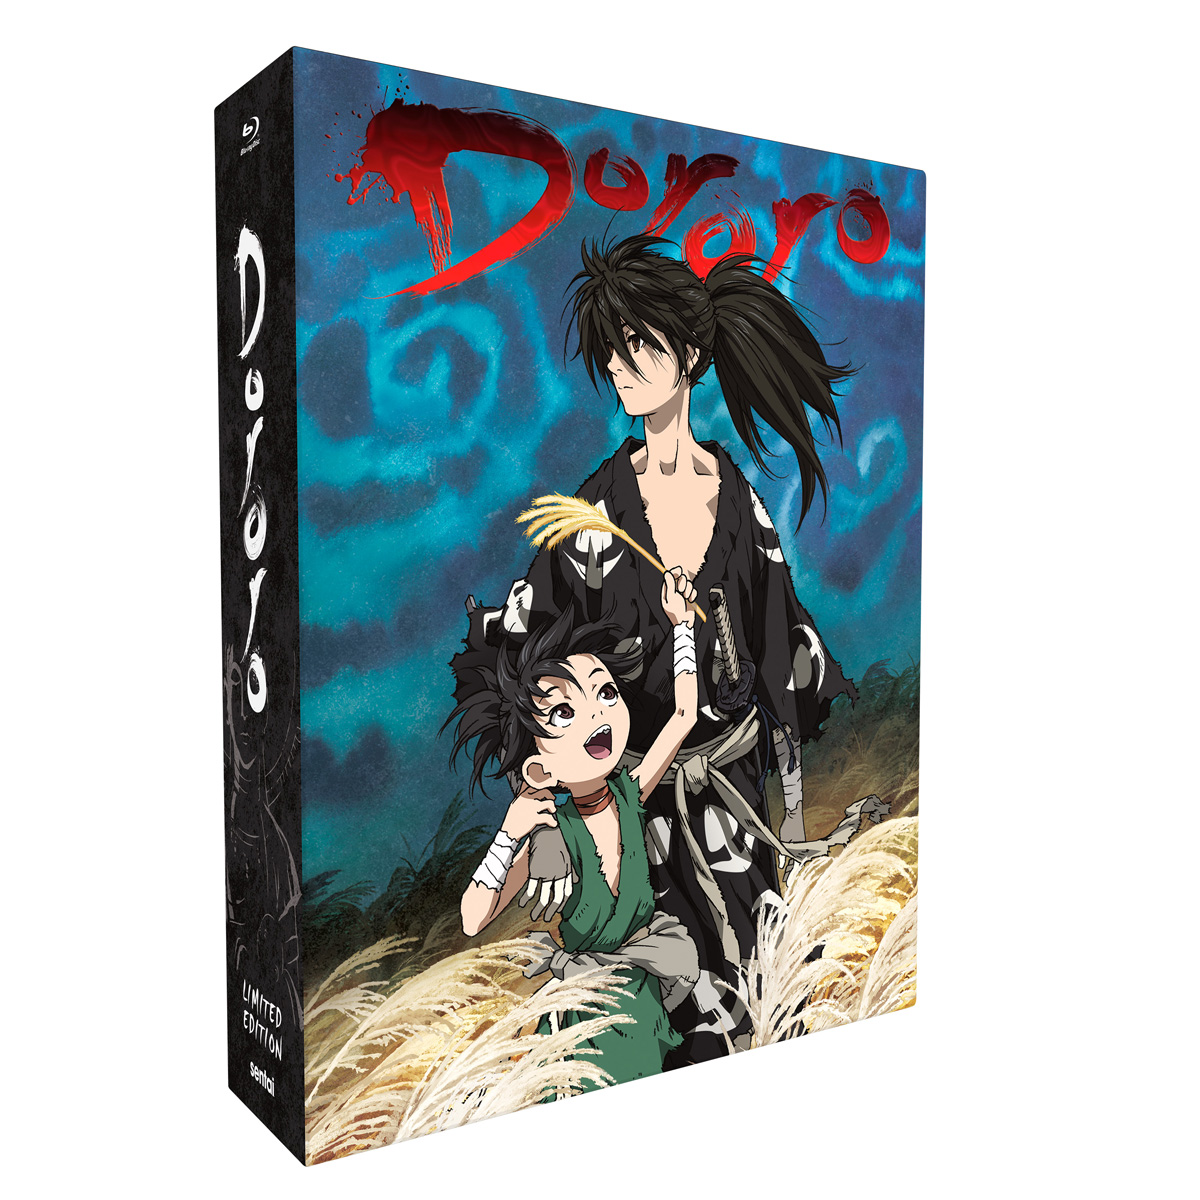 Dororo DVD  Crunchyroll Store